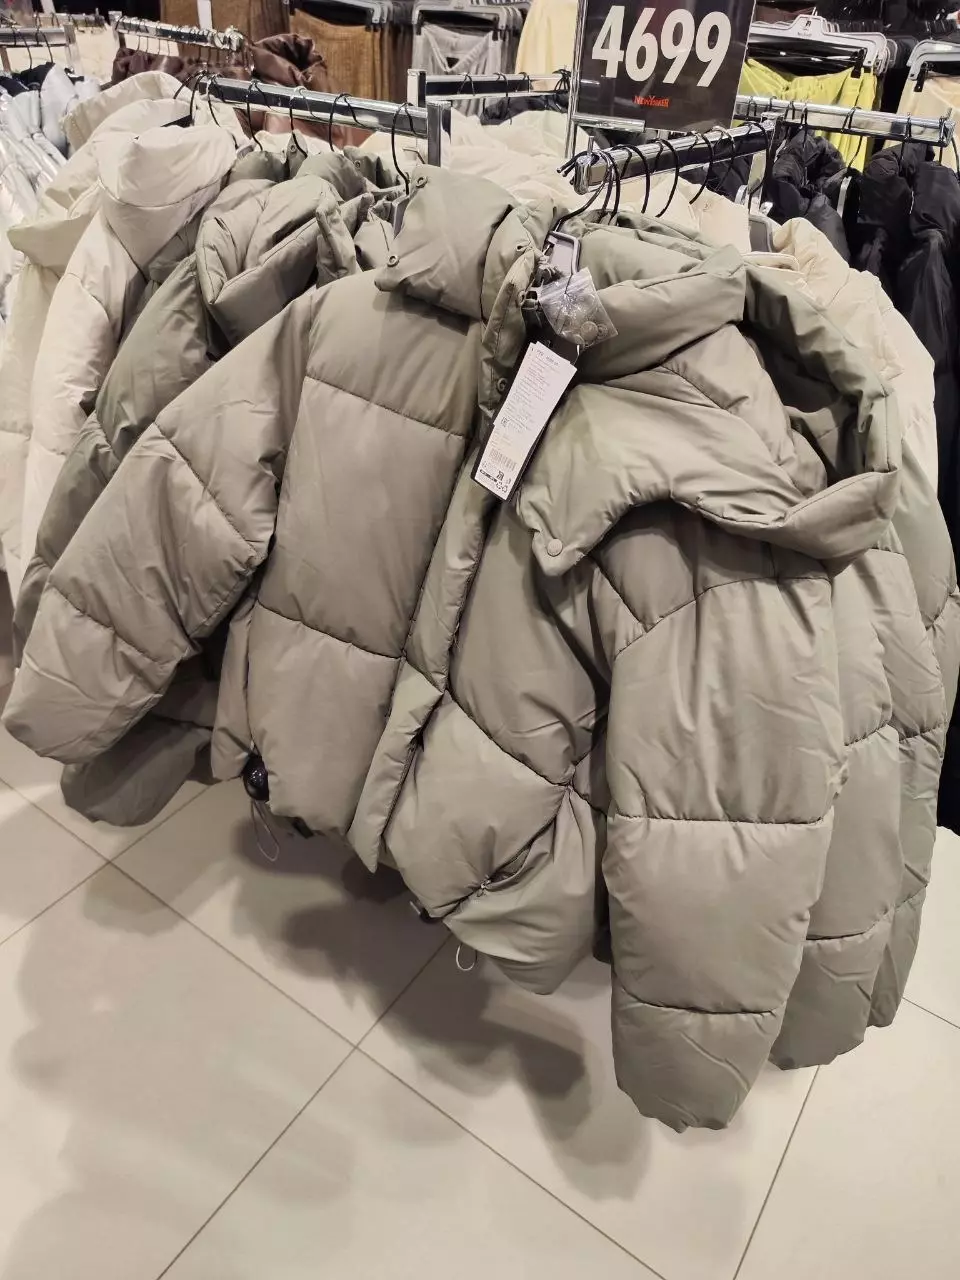 Ассортимент курток в магазине New Yorker